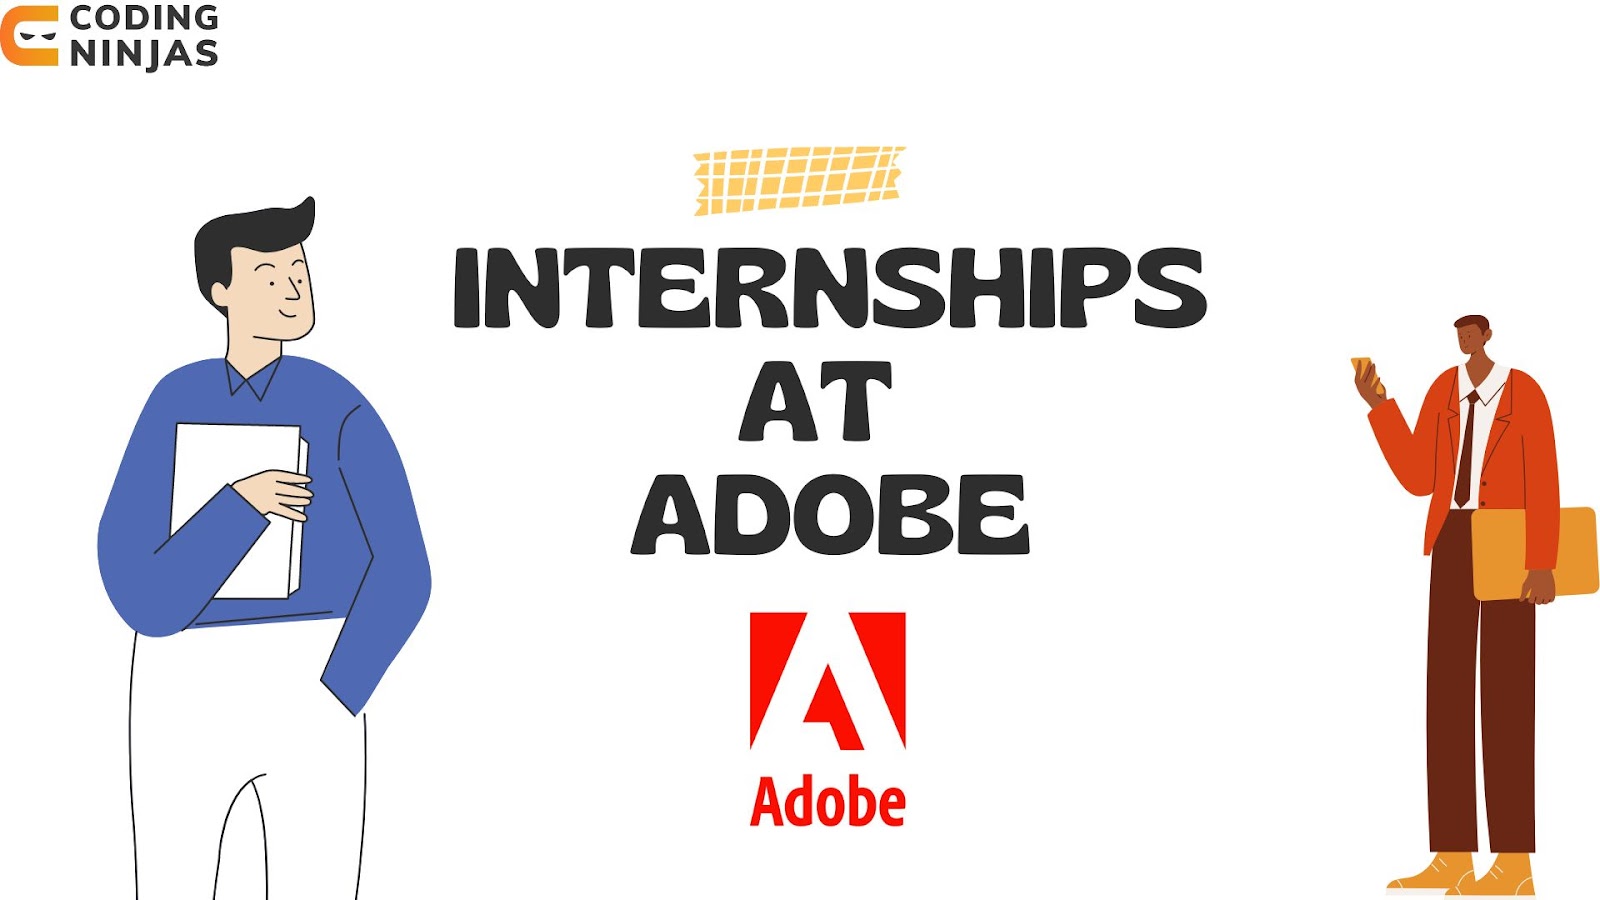 Internships at Adobe Coding Ninjas